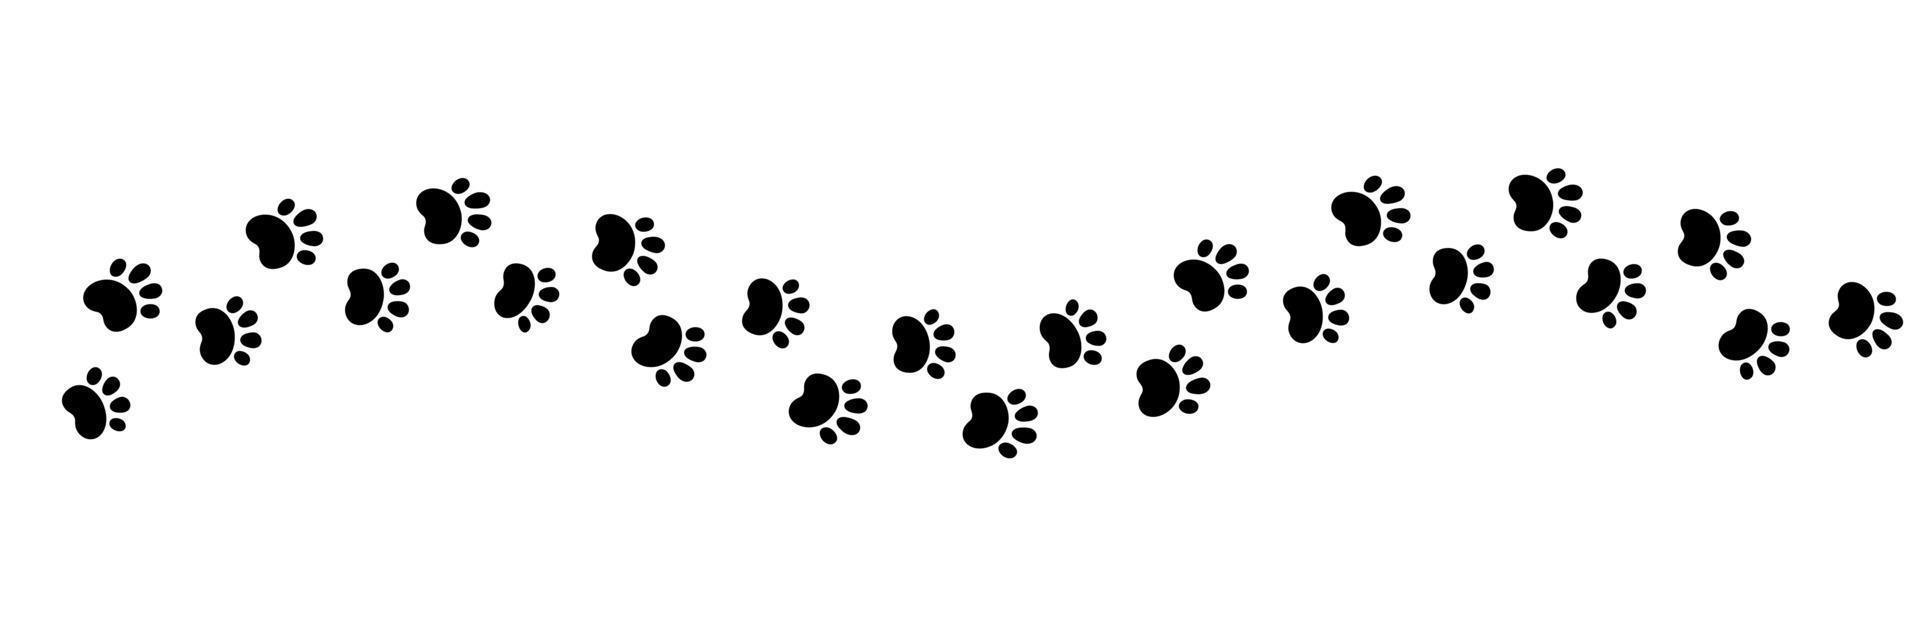 Hund Pfote drucken Welle Linie. süß Katze Pfotenabdruck. Haustier Fuß Pfad. schwarz Hund Schritt Silhouette. einfach Gekritzel Zeichnung. Vektor Illustration isoliert auf Weiß Hintergrund